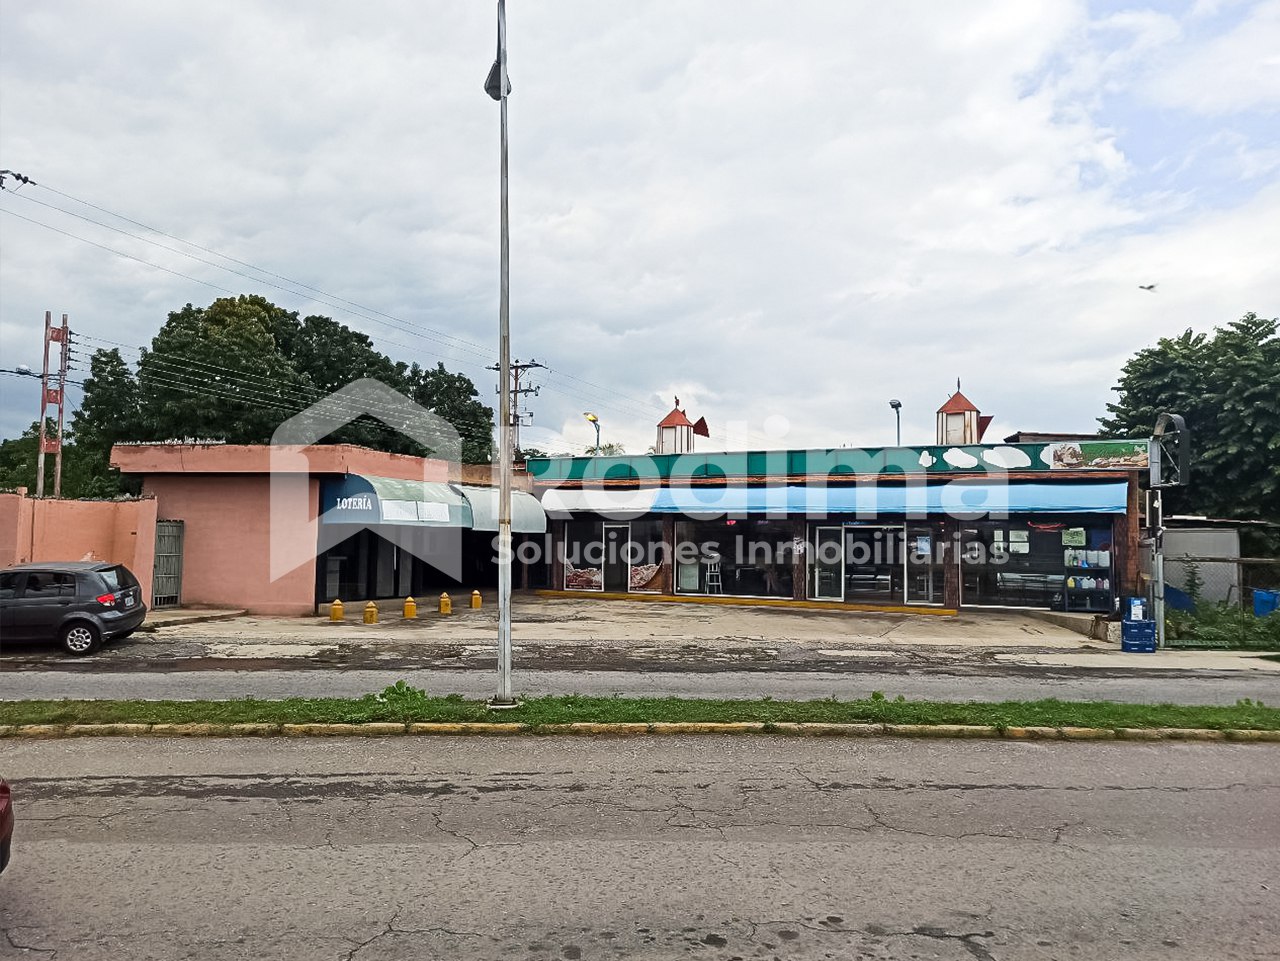 Local Comercial En Alquiler, Turmero Avenida Principal Los Overos